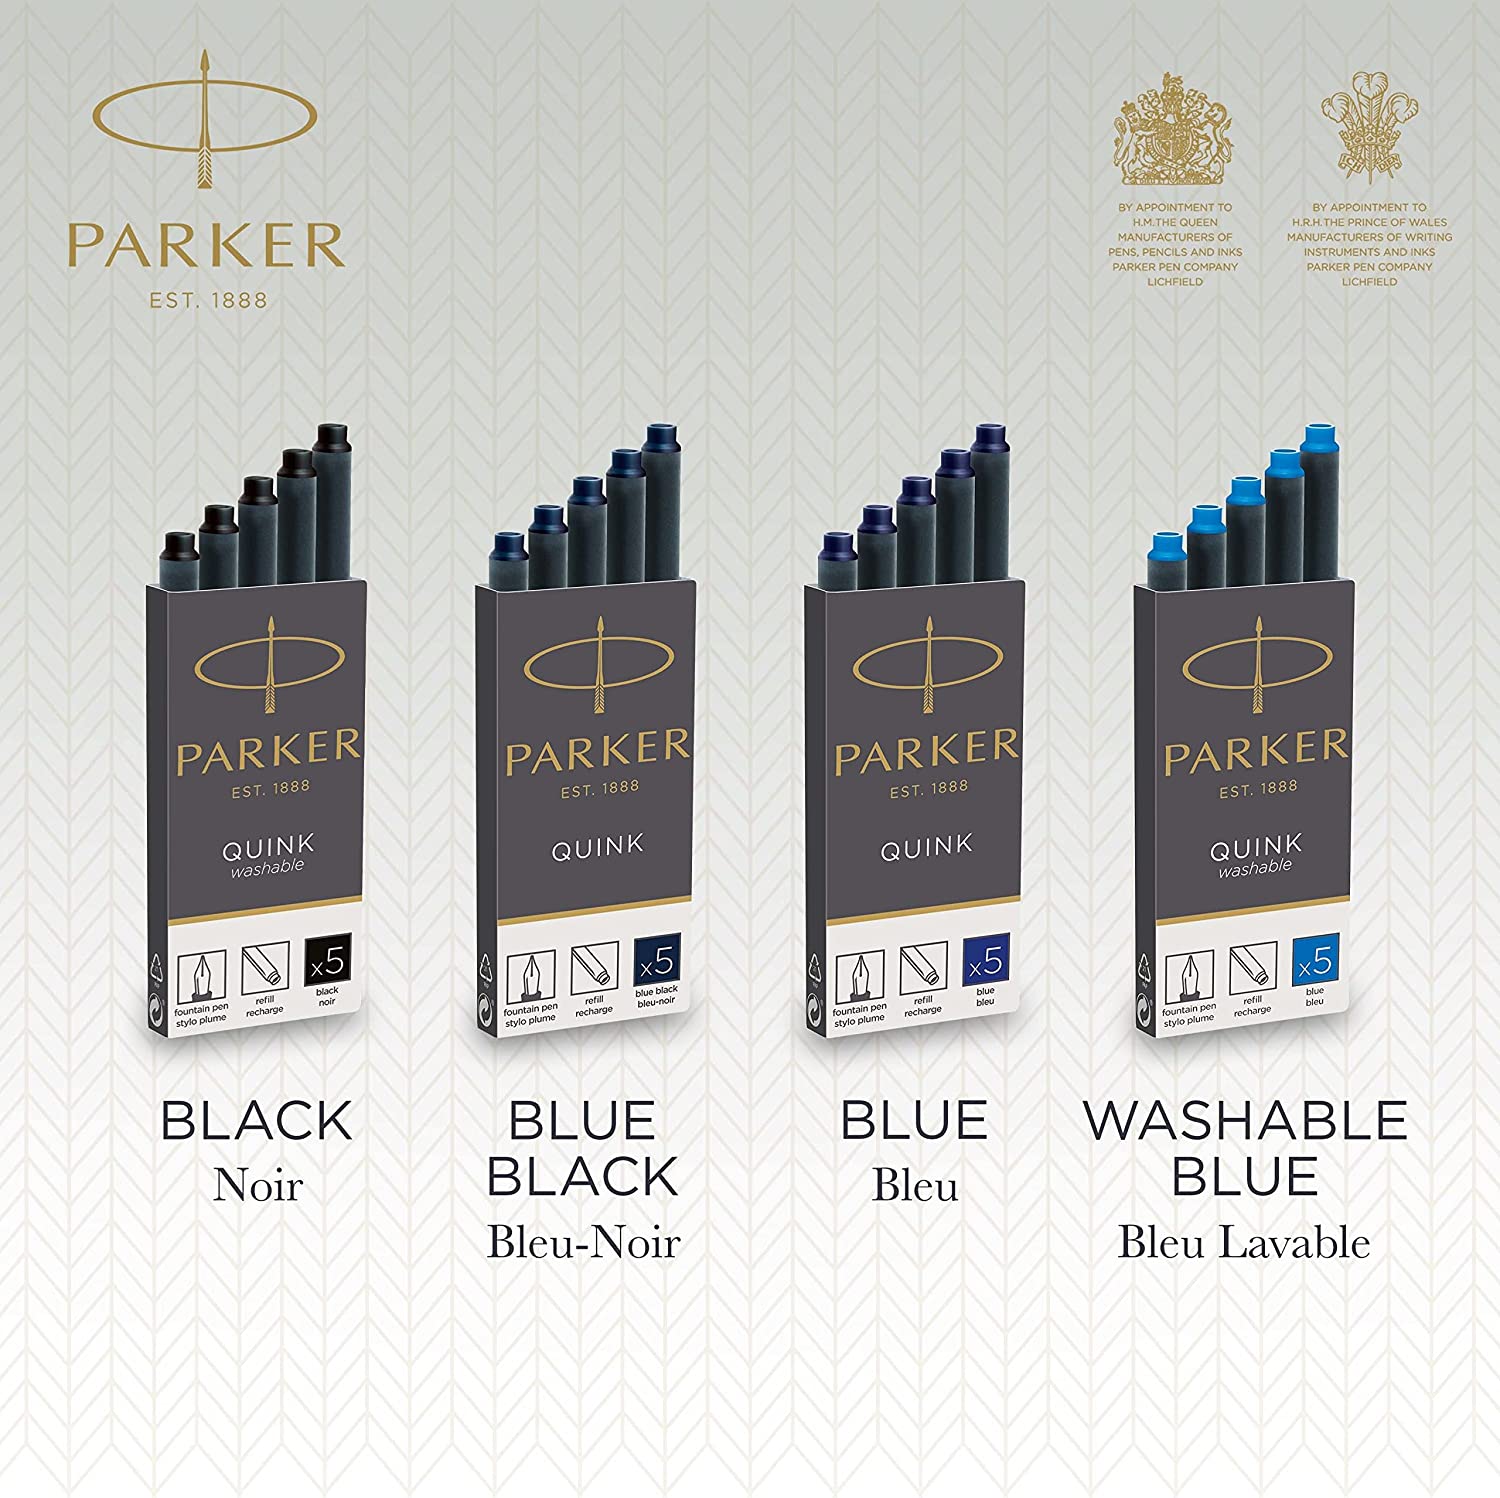 Boite de 5 Cartouches d'encre effaçable - Bleu royal PARKER Quink